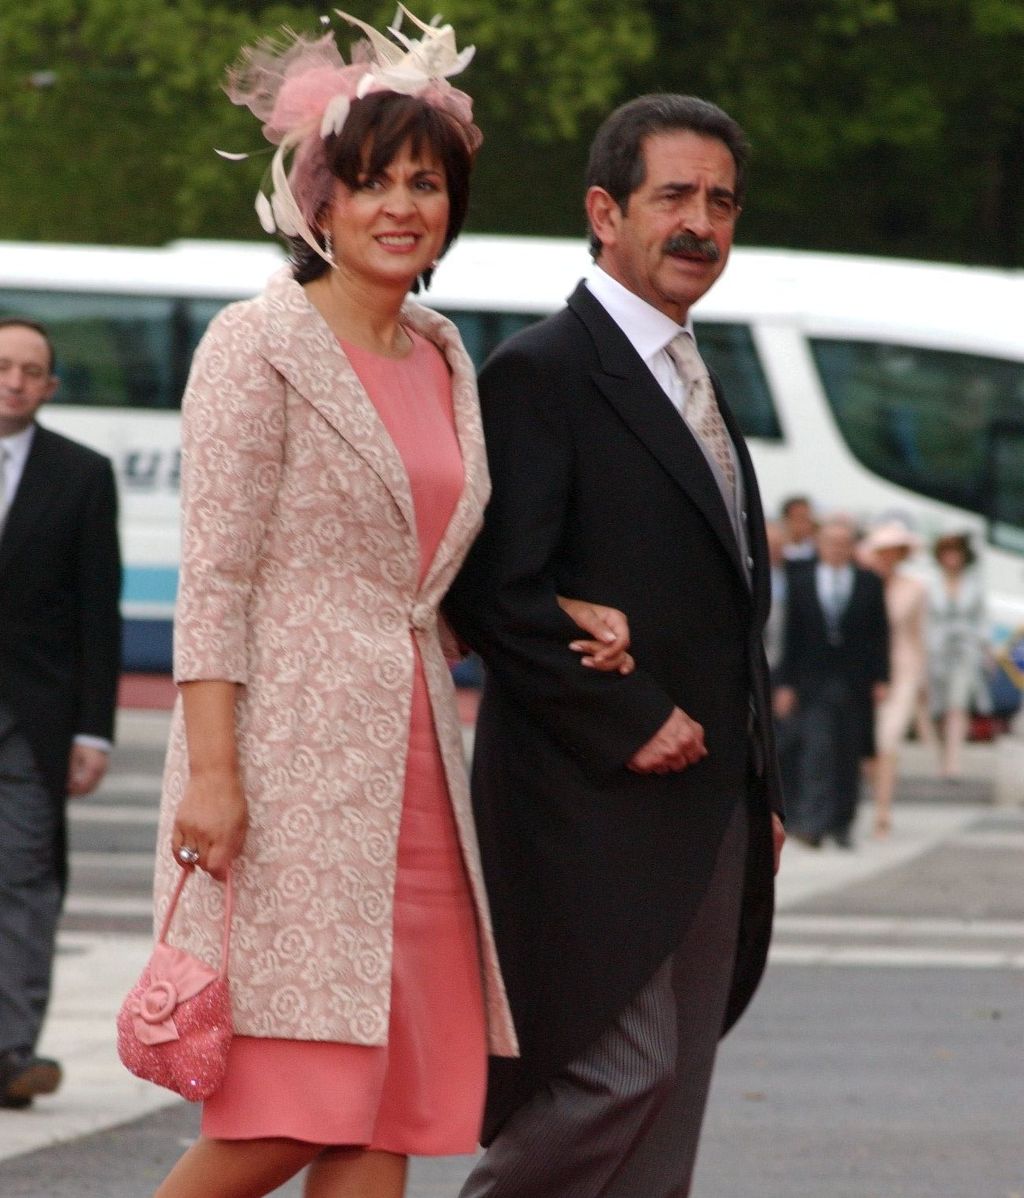 Miguel Ángel Revilla y su mujer, Aurora Díaz, en la boda de los reyes Felipe y Letizia en 2004